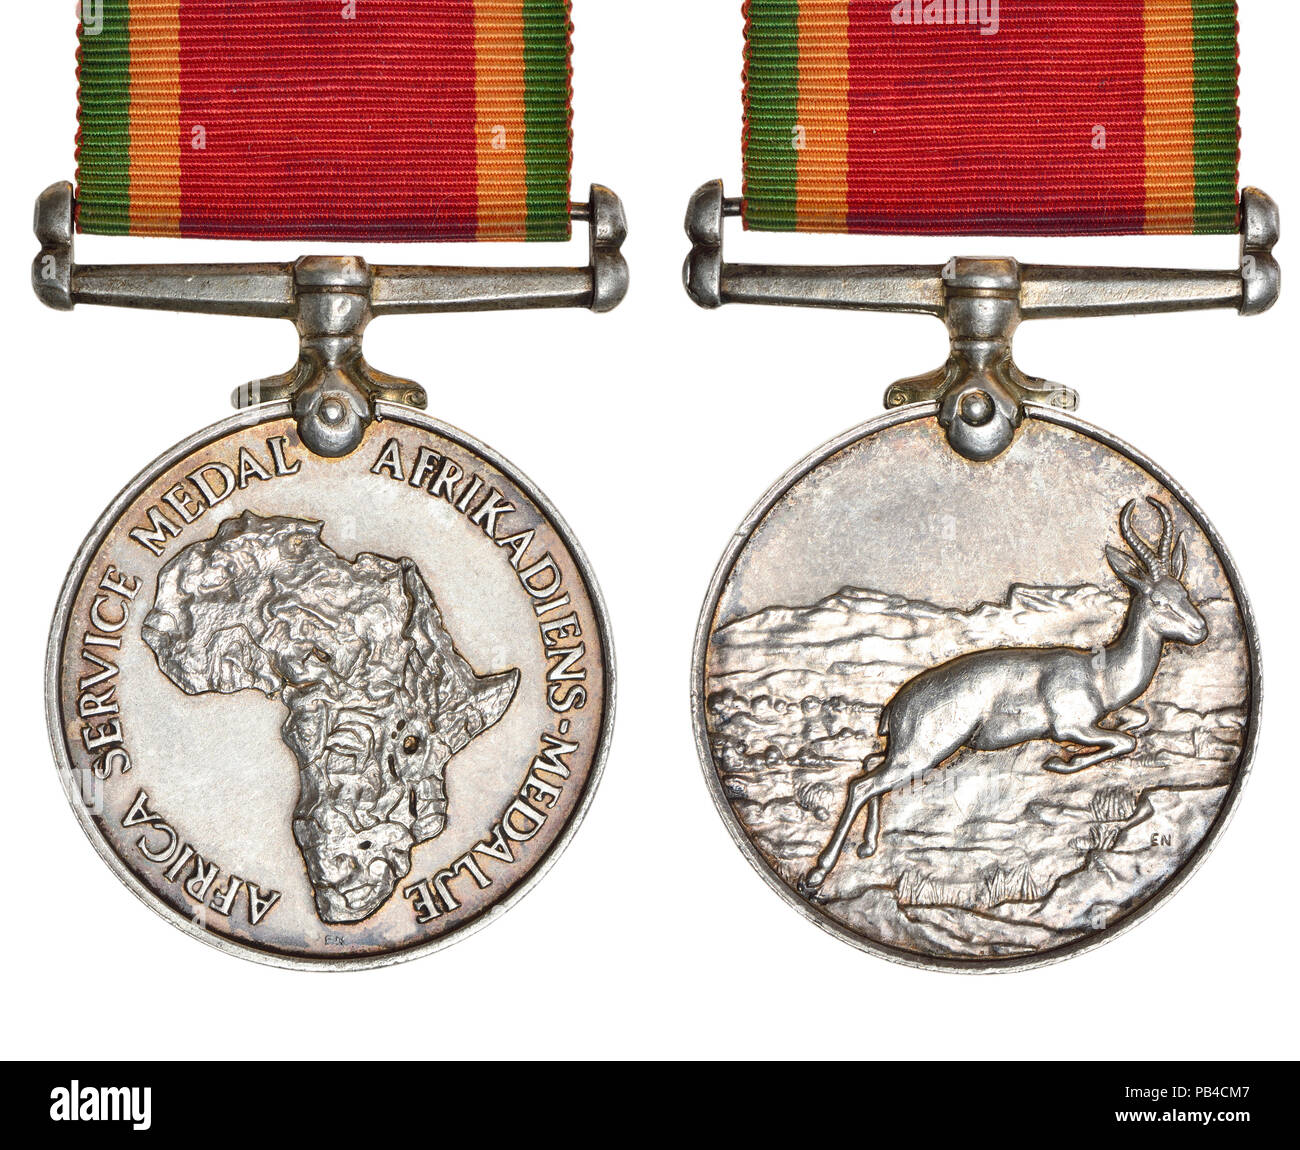 Der Afrika Service Medal: Südafrikanische Kampagne Medaille für den Service während des Zweiten Weltkrieges, an die Mitglieder der Union Streitkräfte, die so ausgezeichnet Stockfoto